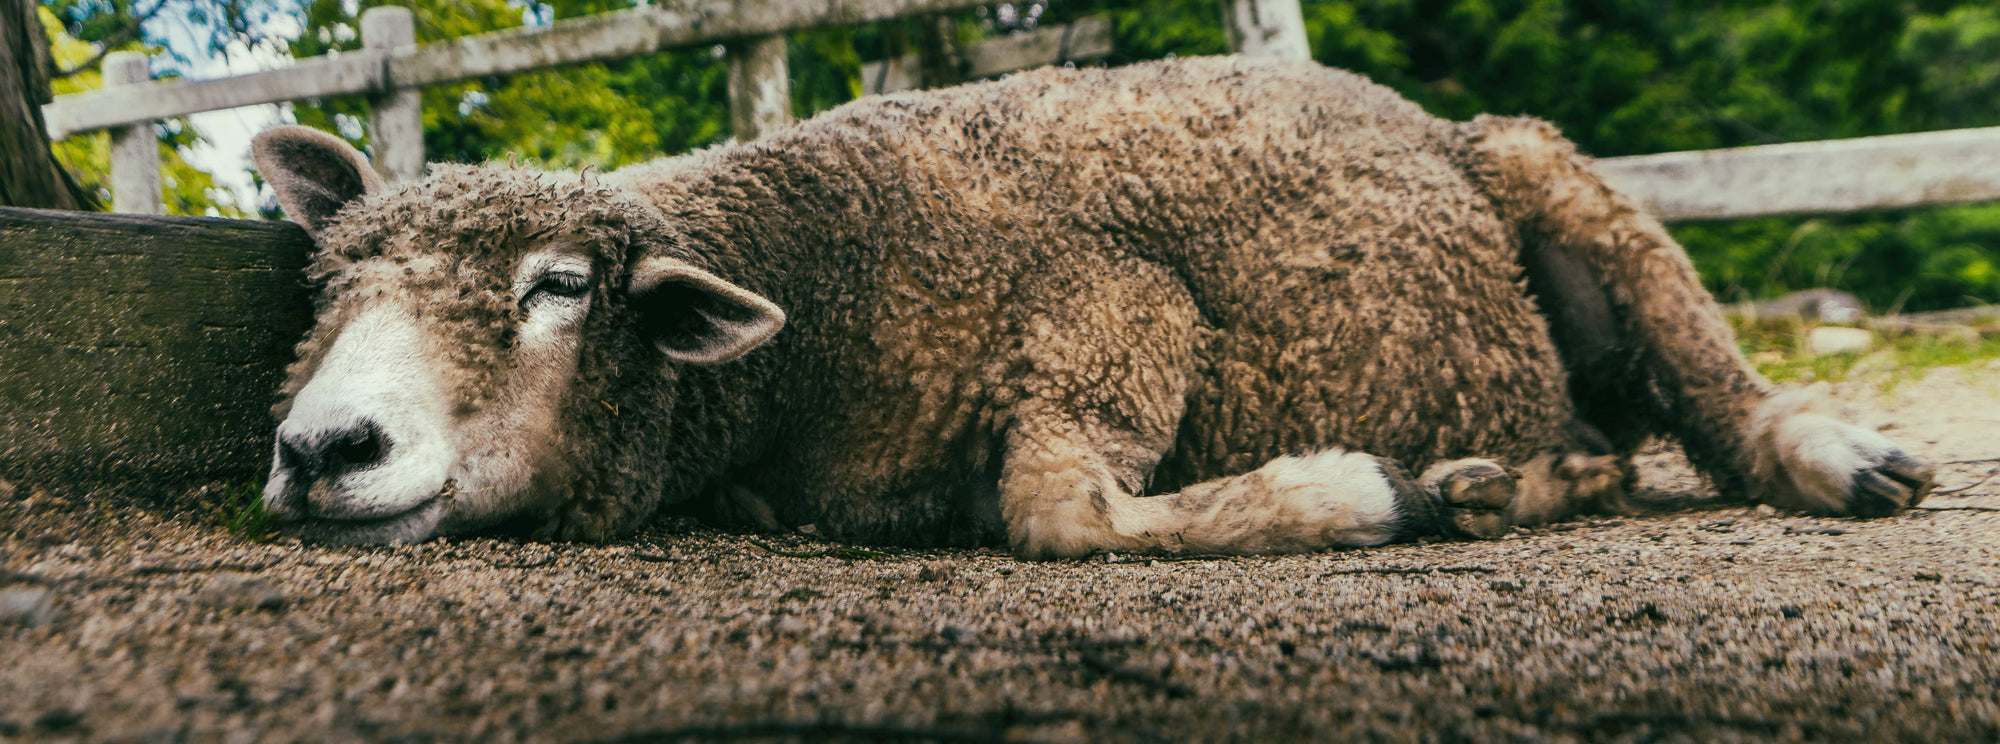 Sleeping sheep - Urban Wool